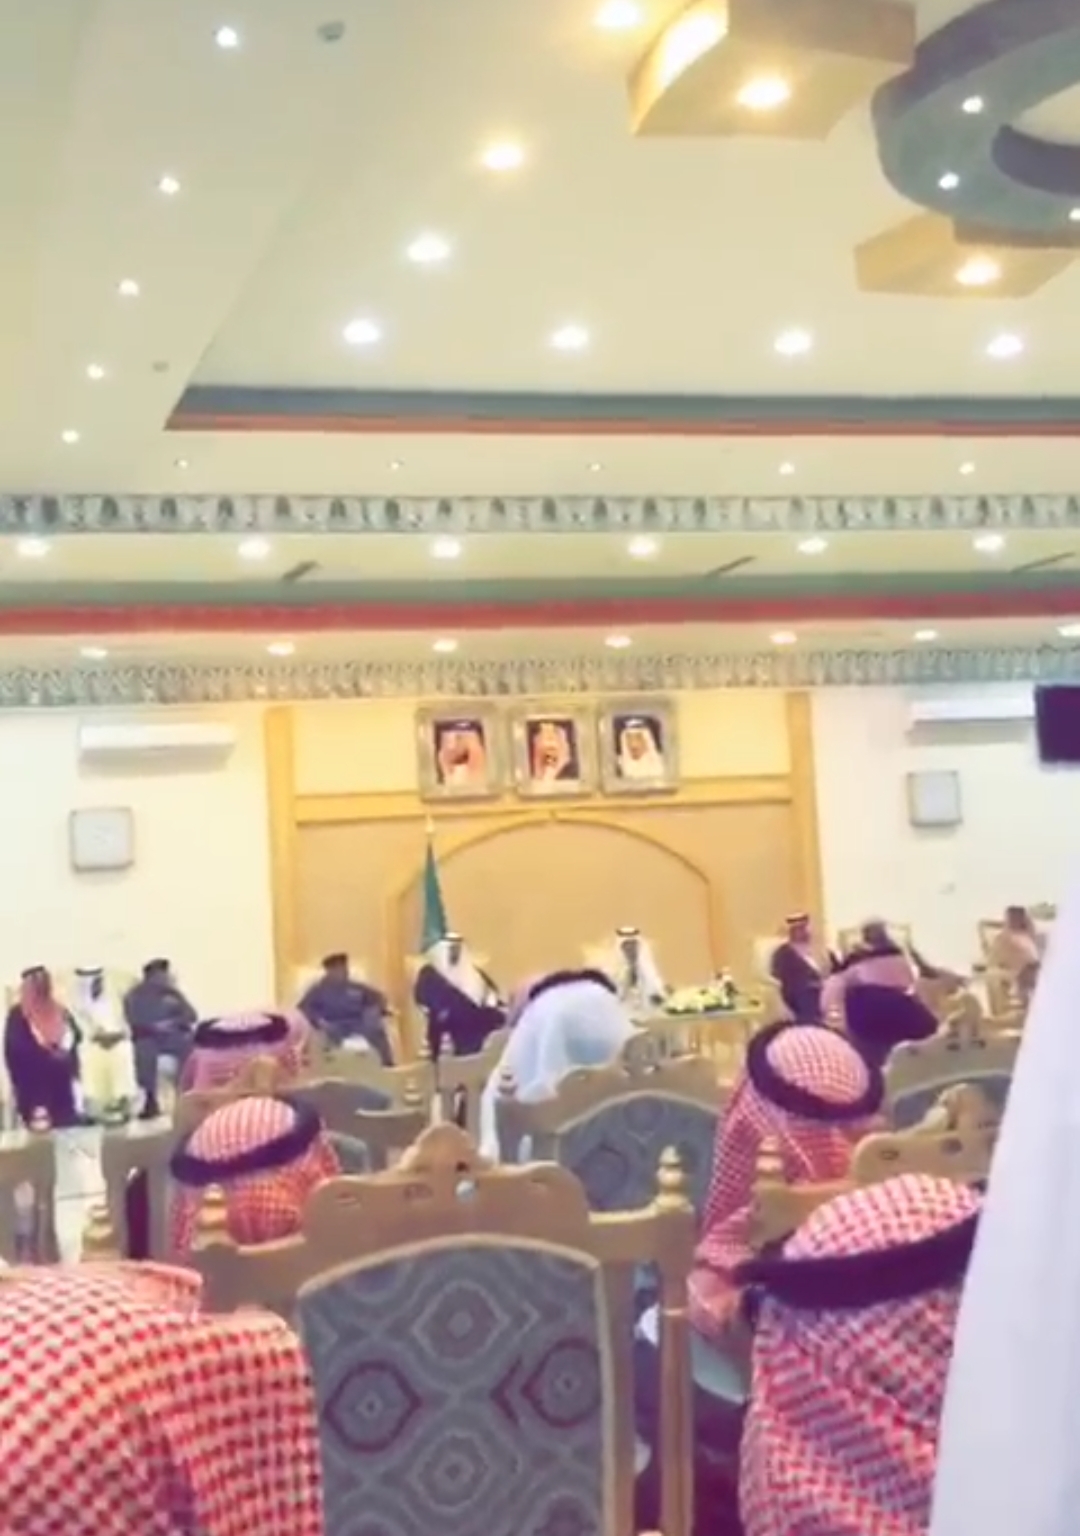 بالفيديو الأمير خالد الفيصل يوقف شاعر عن إكمال قصيدته أمام الحضور لهذا السبب!!